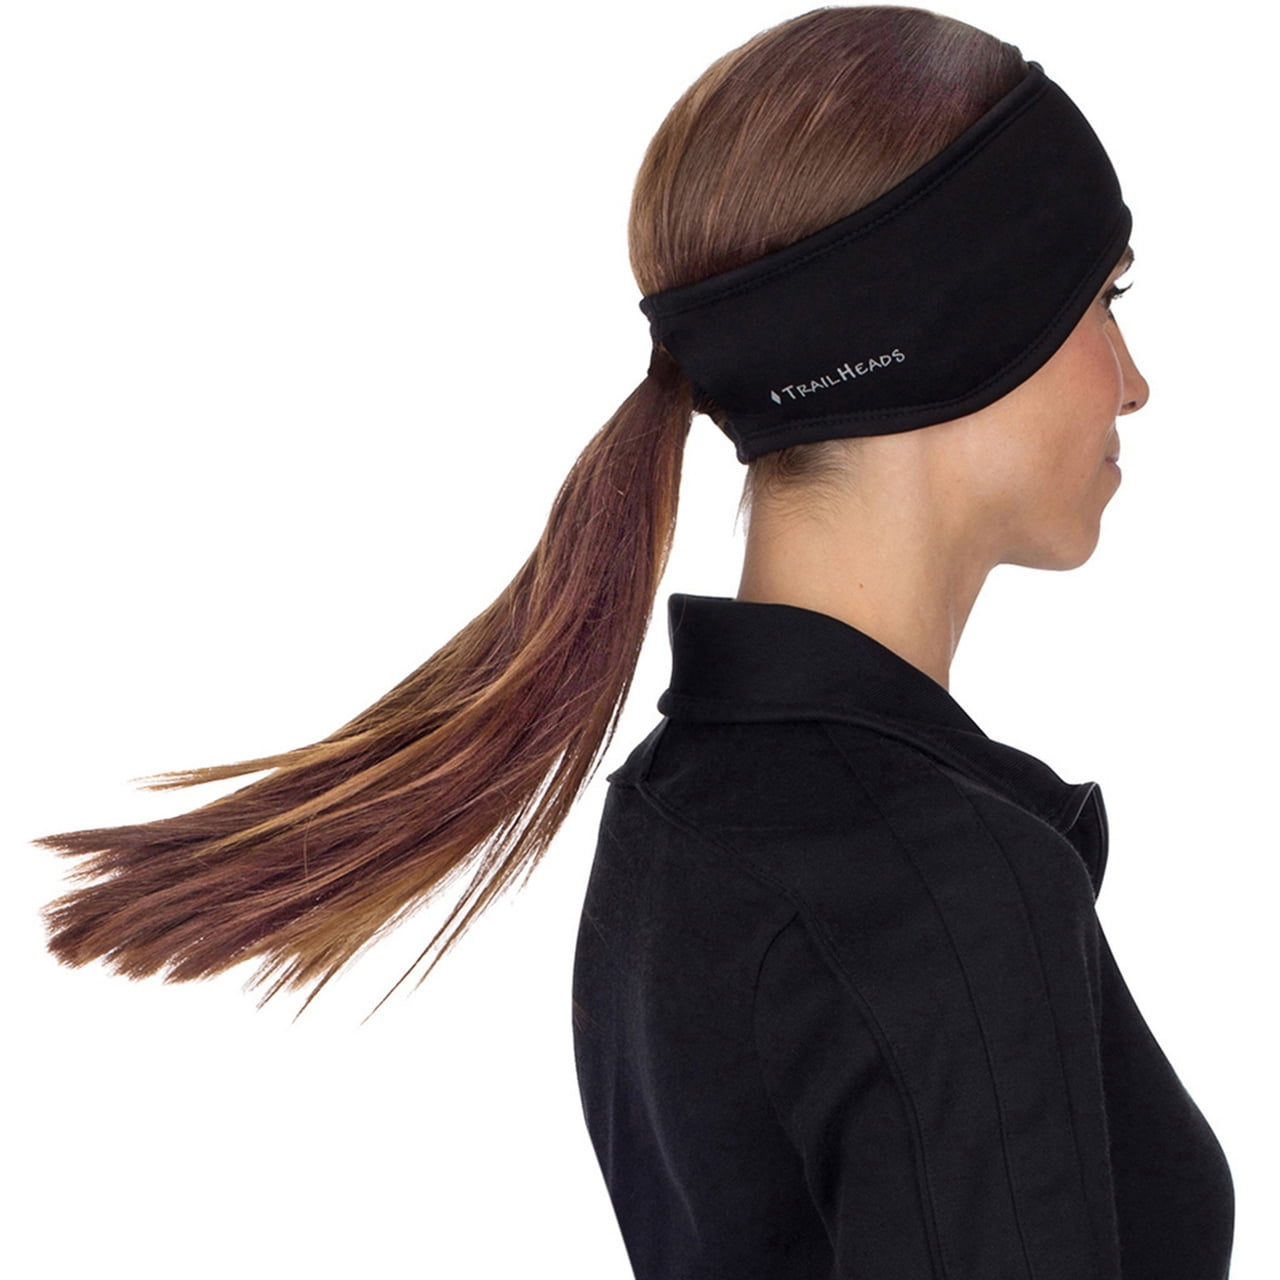 Details about   Women Girls Ponytail Headband Running Headband Winter Sweatband Ear Warmer 